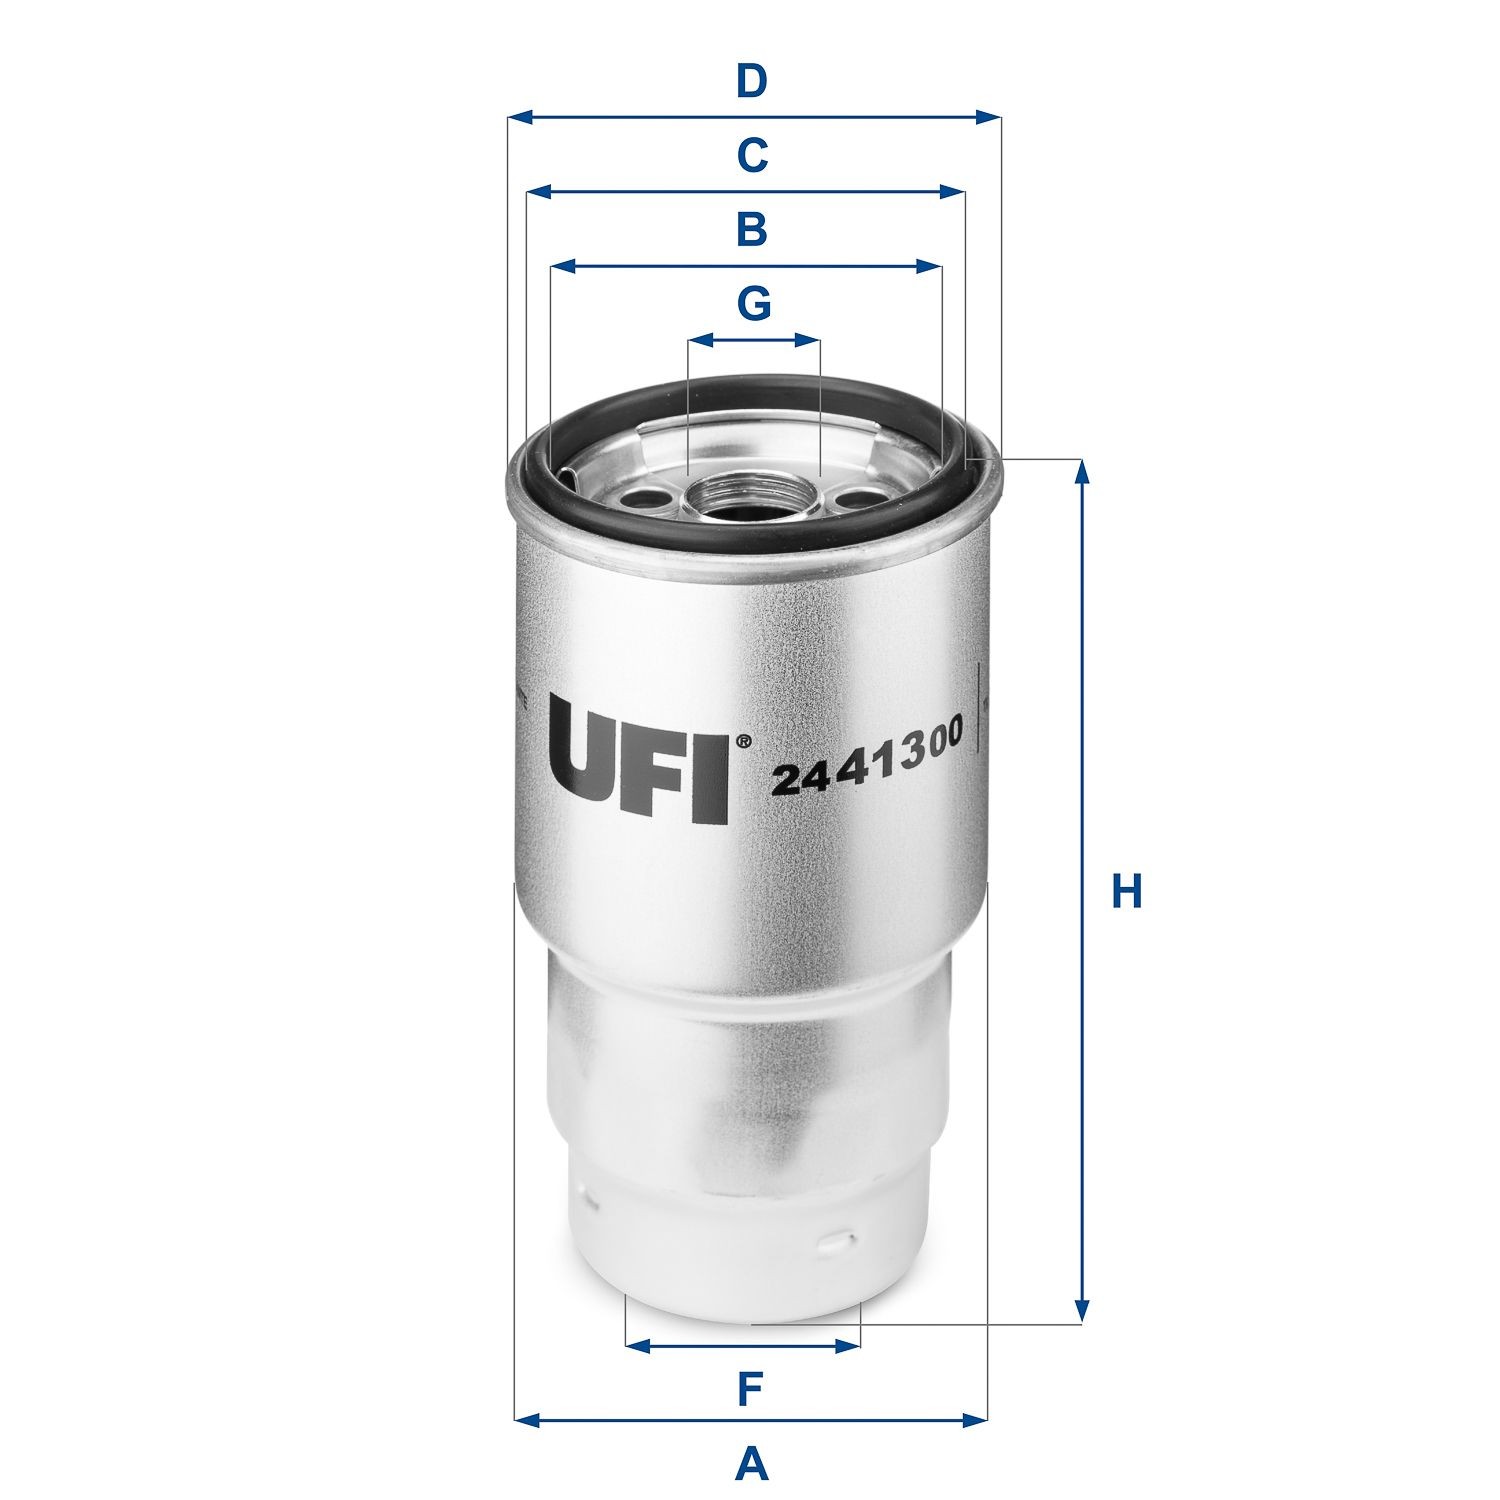 24.413.00 Fuel filter 24.413.00 UFI Filter Insert